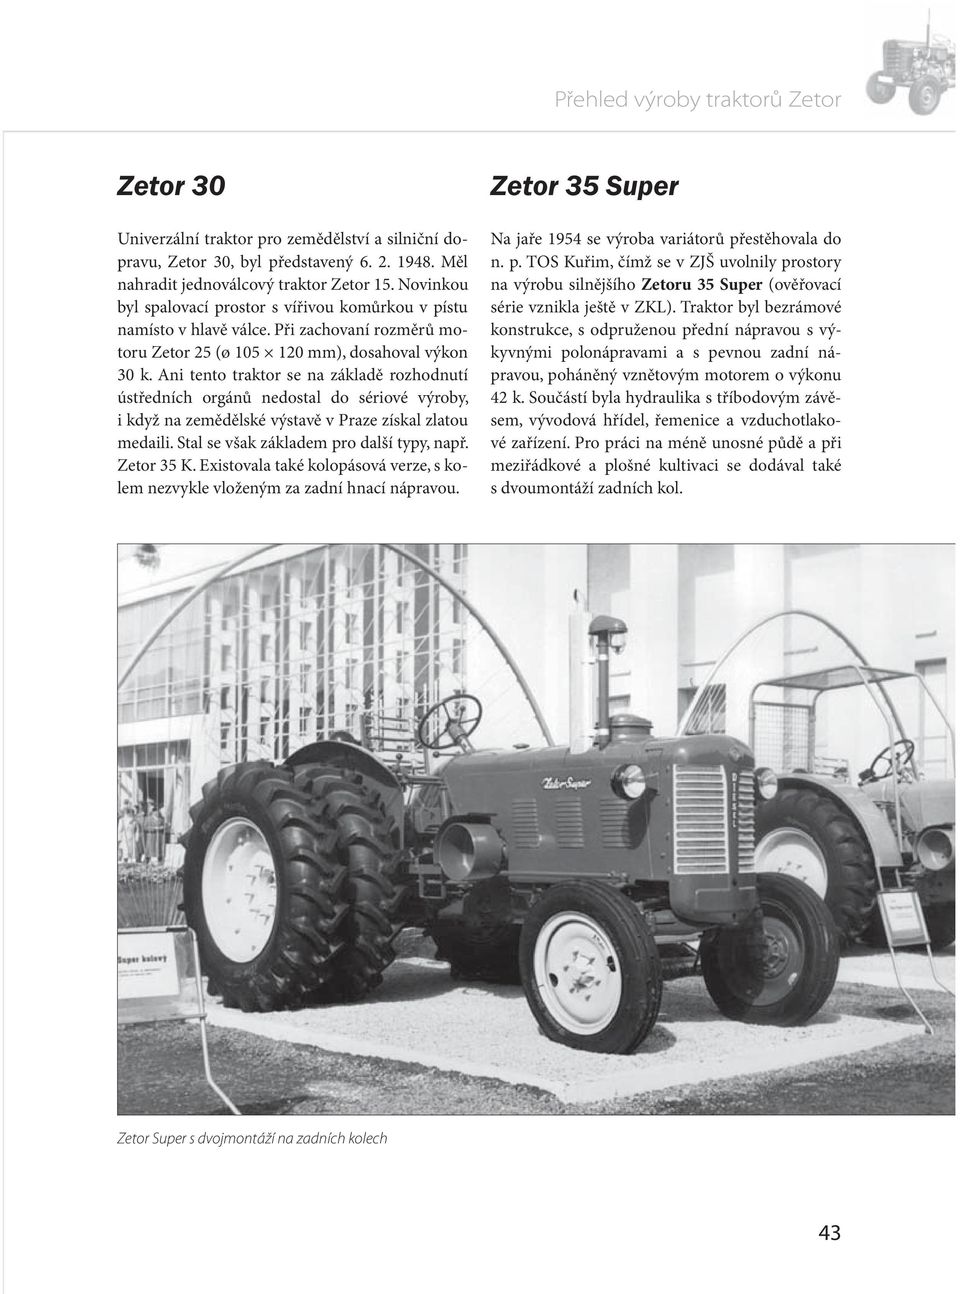 Ani tento traktor se na základě rozhodnutí ústředních orgánů nedostal do sériové výroby, i když na zemědělské výstavě v Praze získal zlatou medaili. Stal se však základem pro další typy, např.